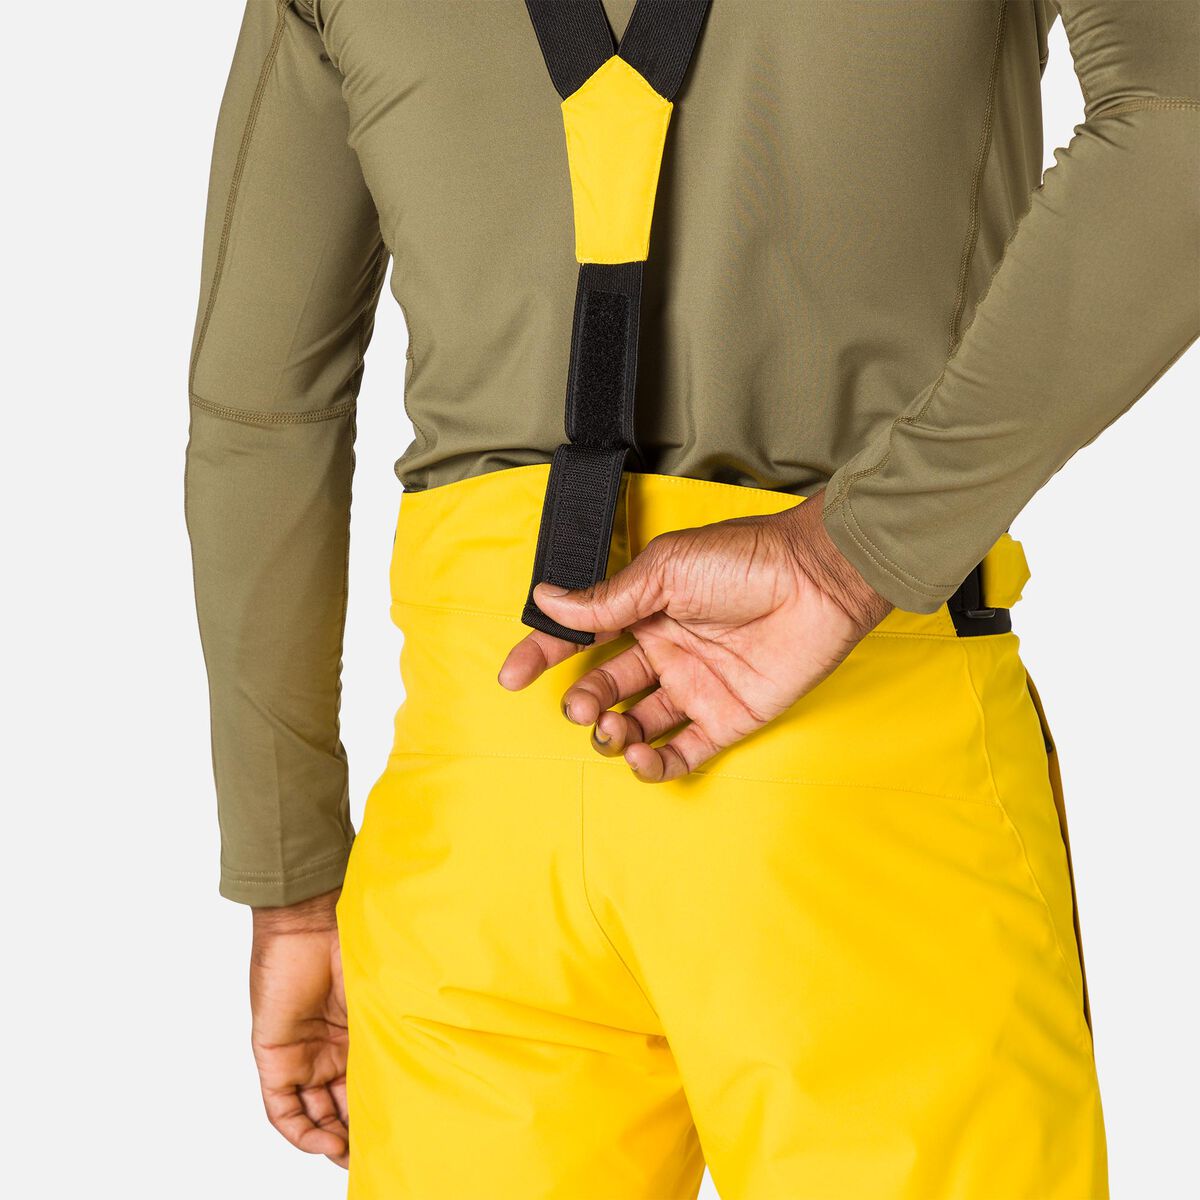 Rossignol Men's Ski Pants yellow